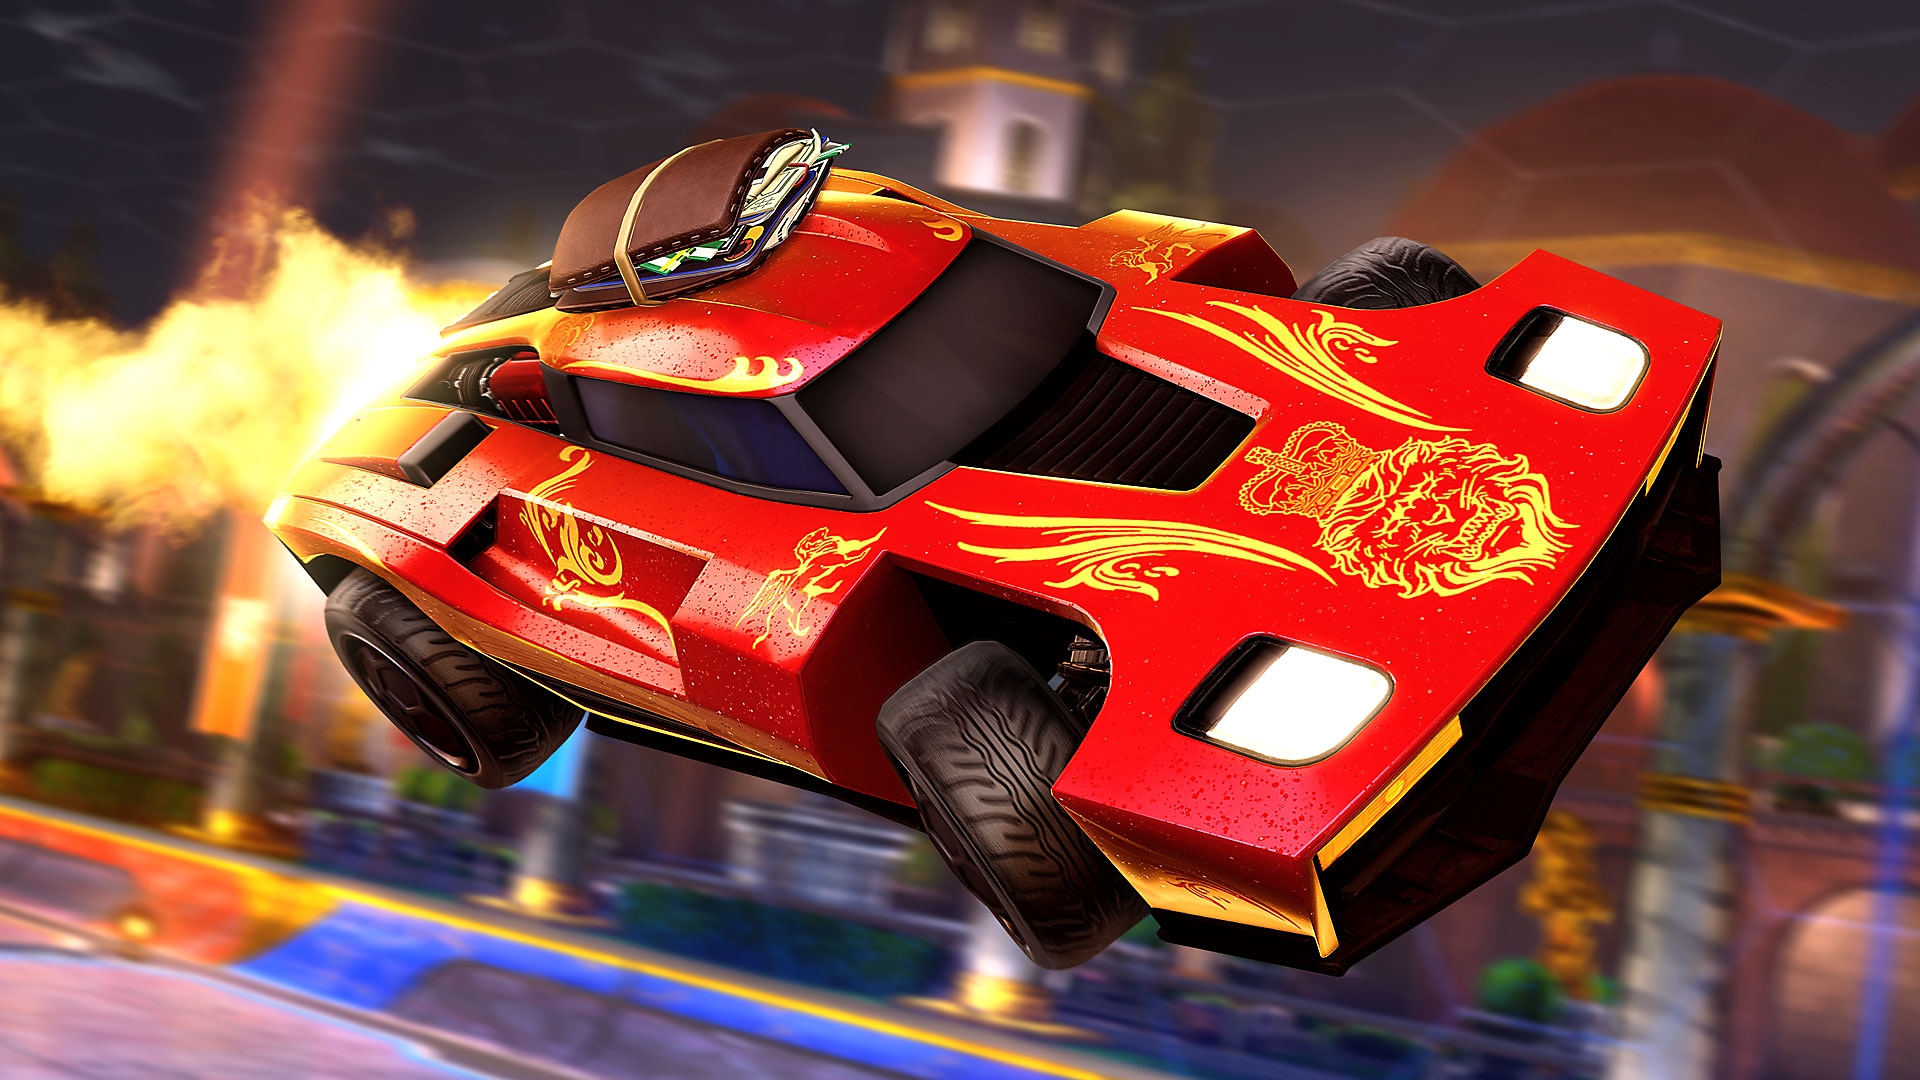 Rocket League – skjermbilde som viser en rød sportsbil med flammer ut bak